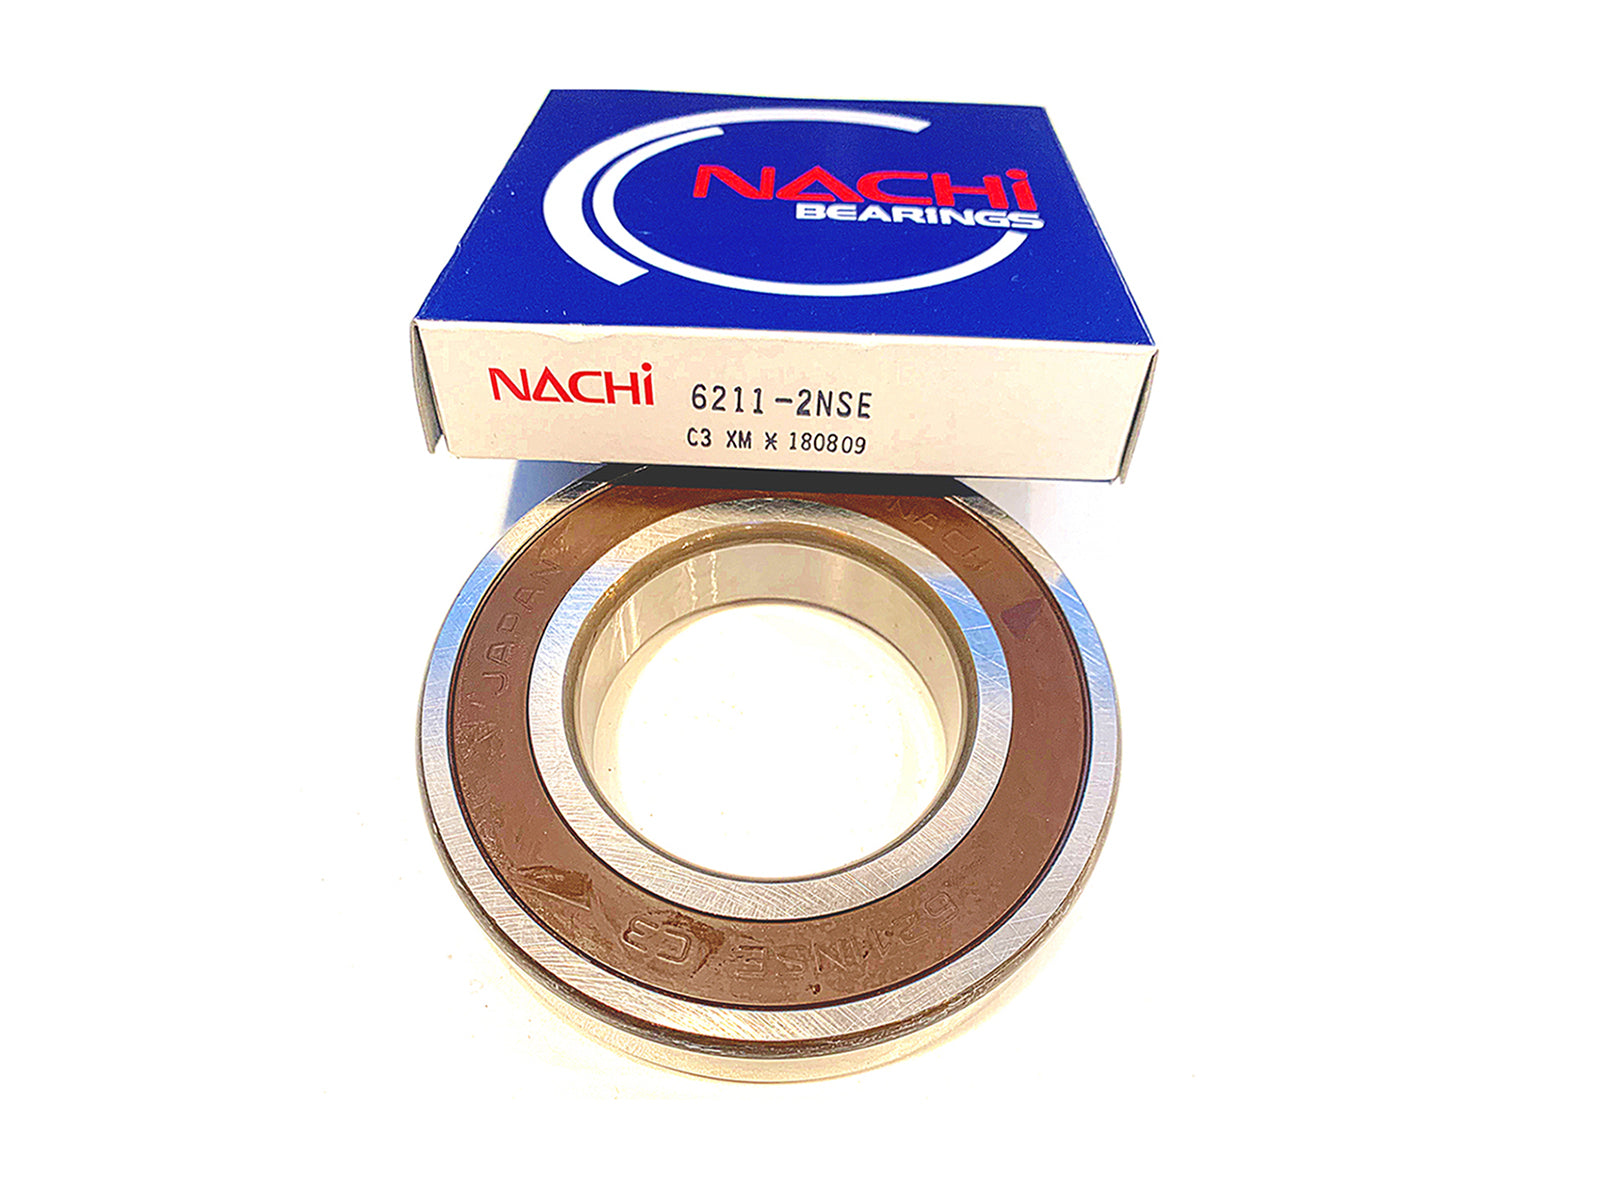 6211-2NSE Nachi Ball Bearing - ppdistributors